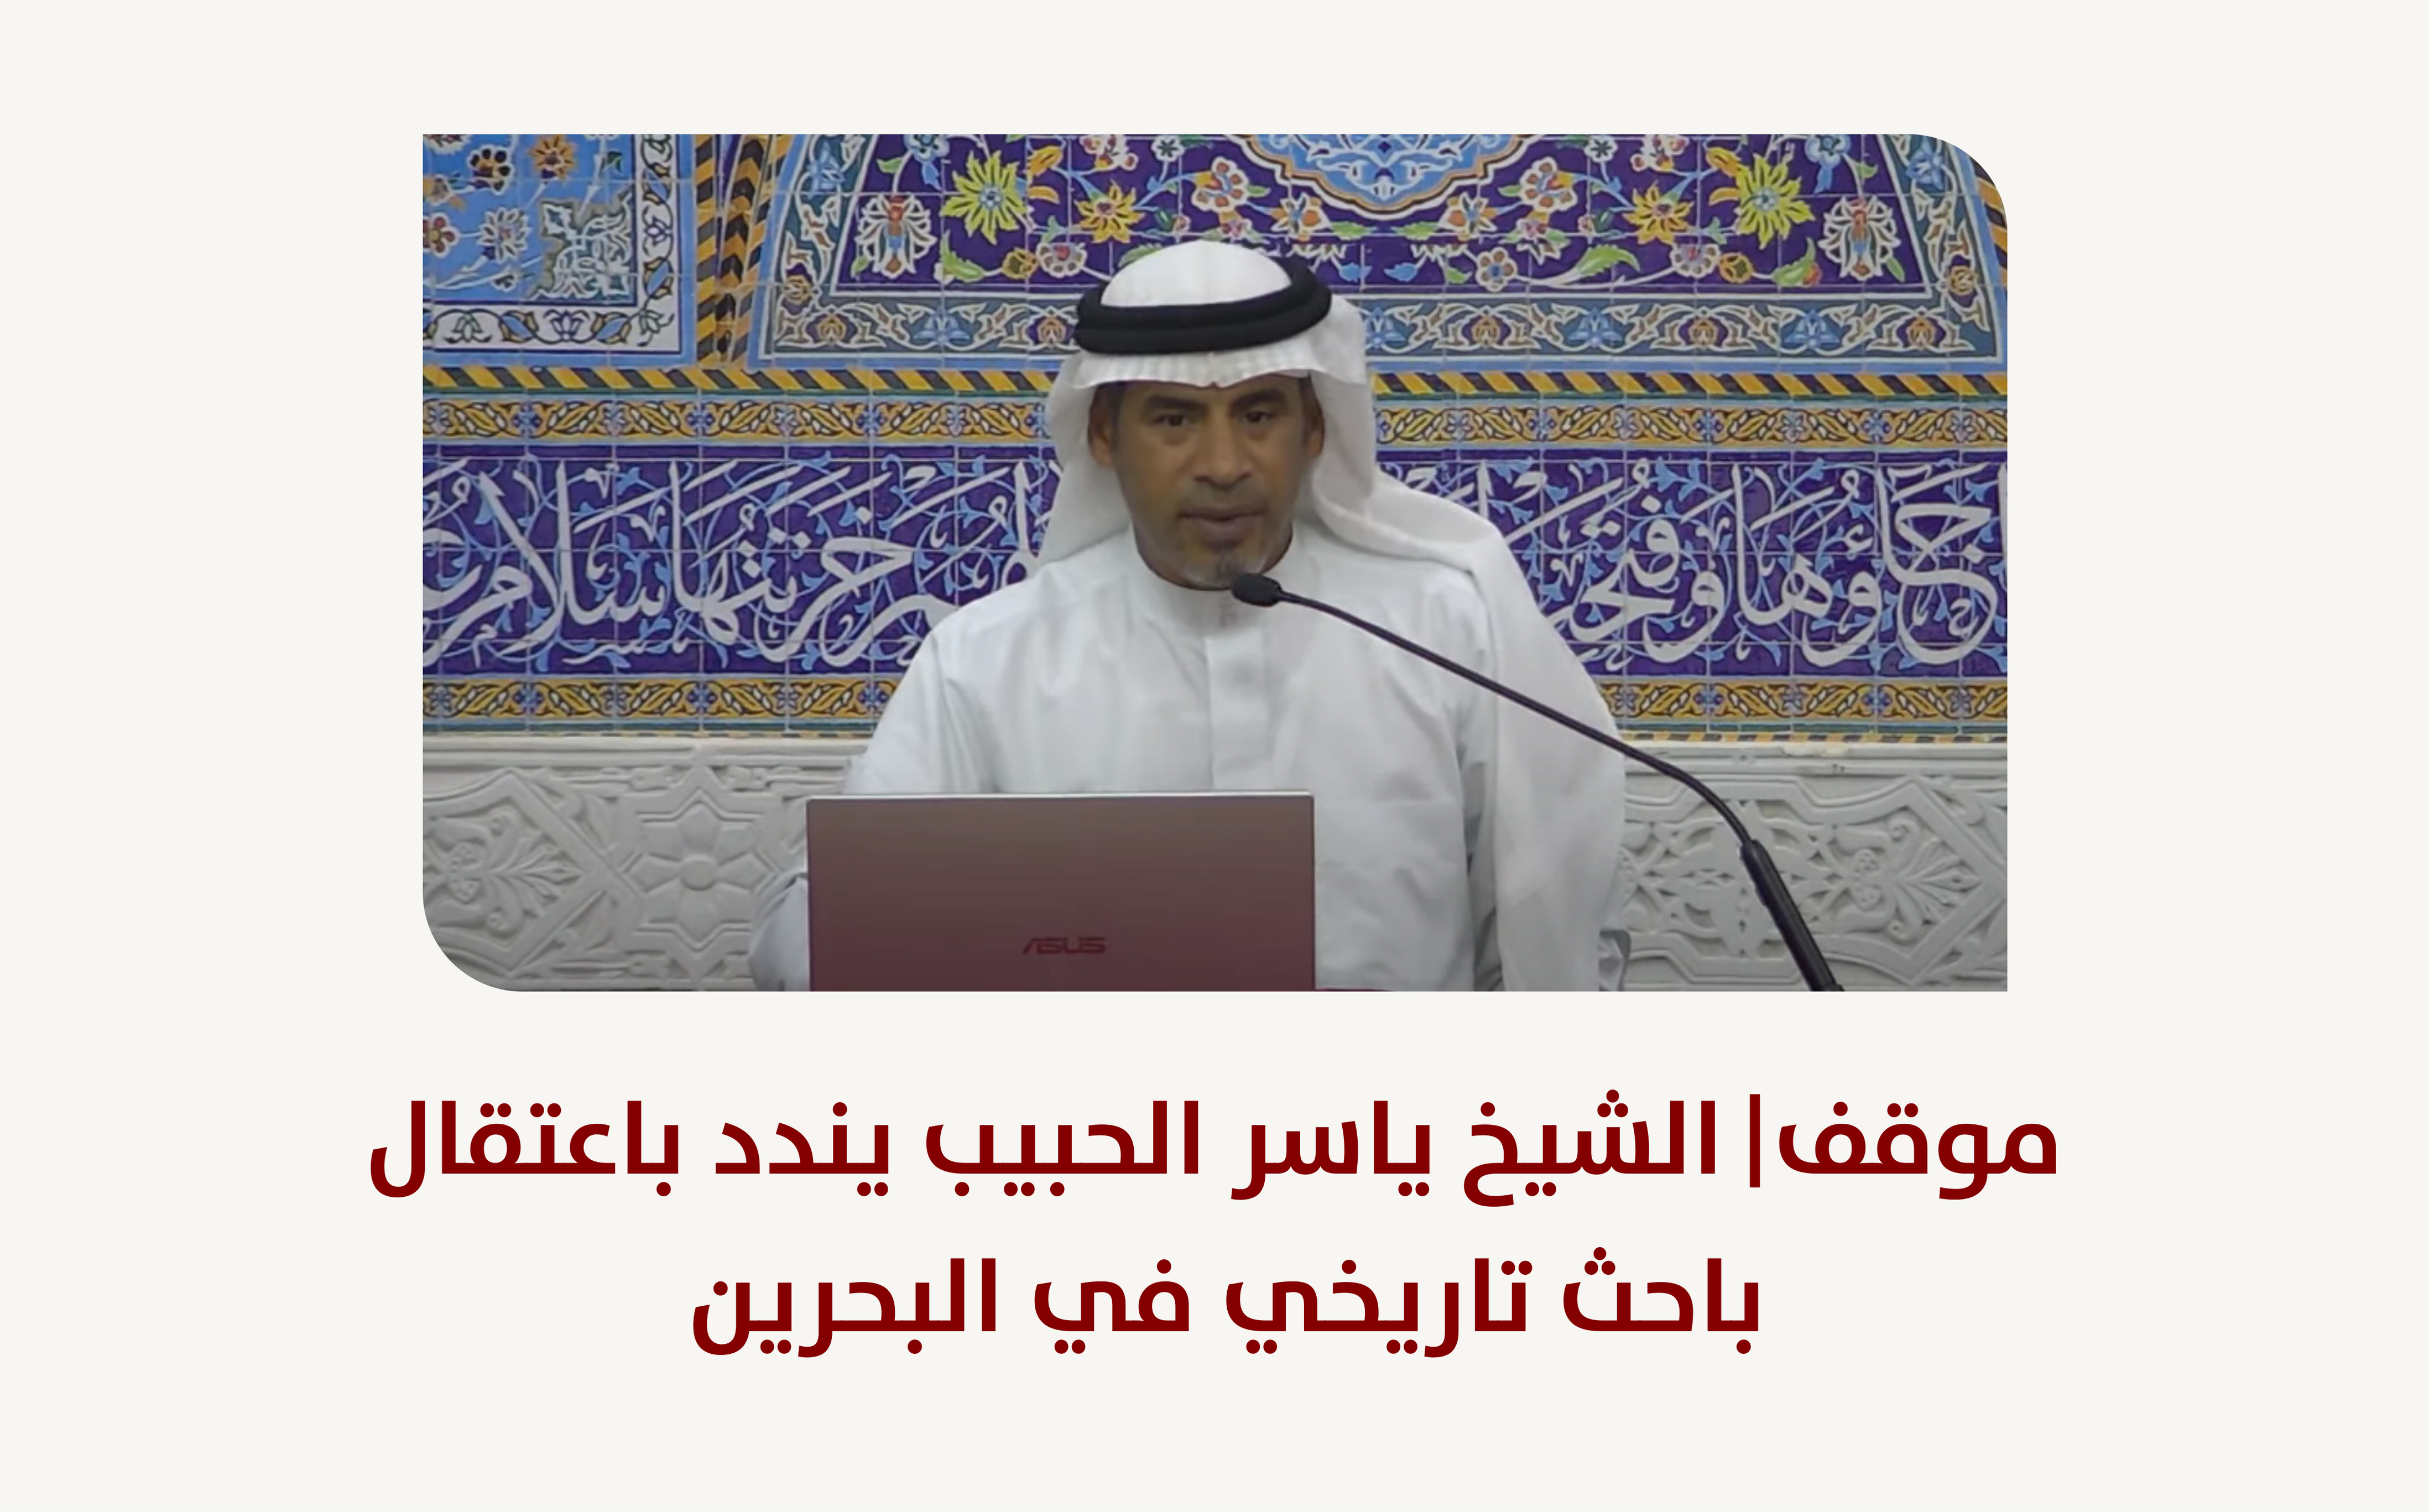 موقف | الشيخ ياسر الحبيب يندد باعتقال باحث تاريخي في البحرين (محدث)